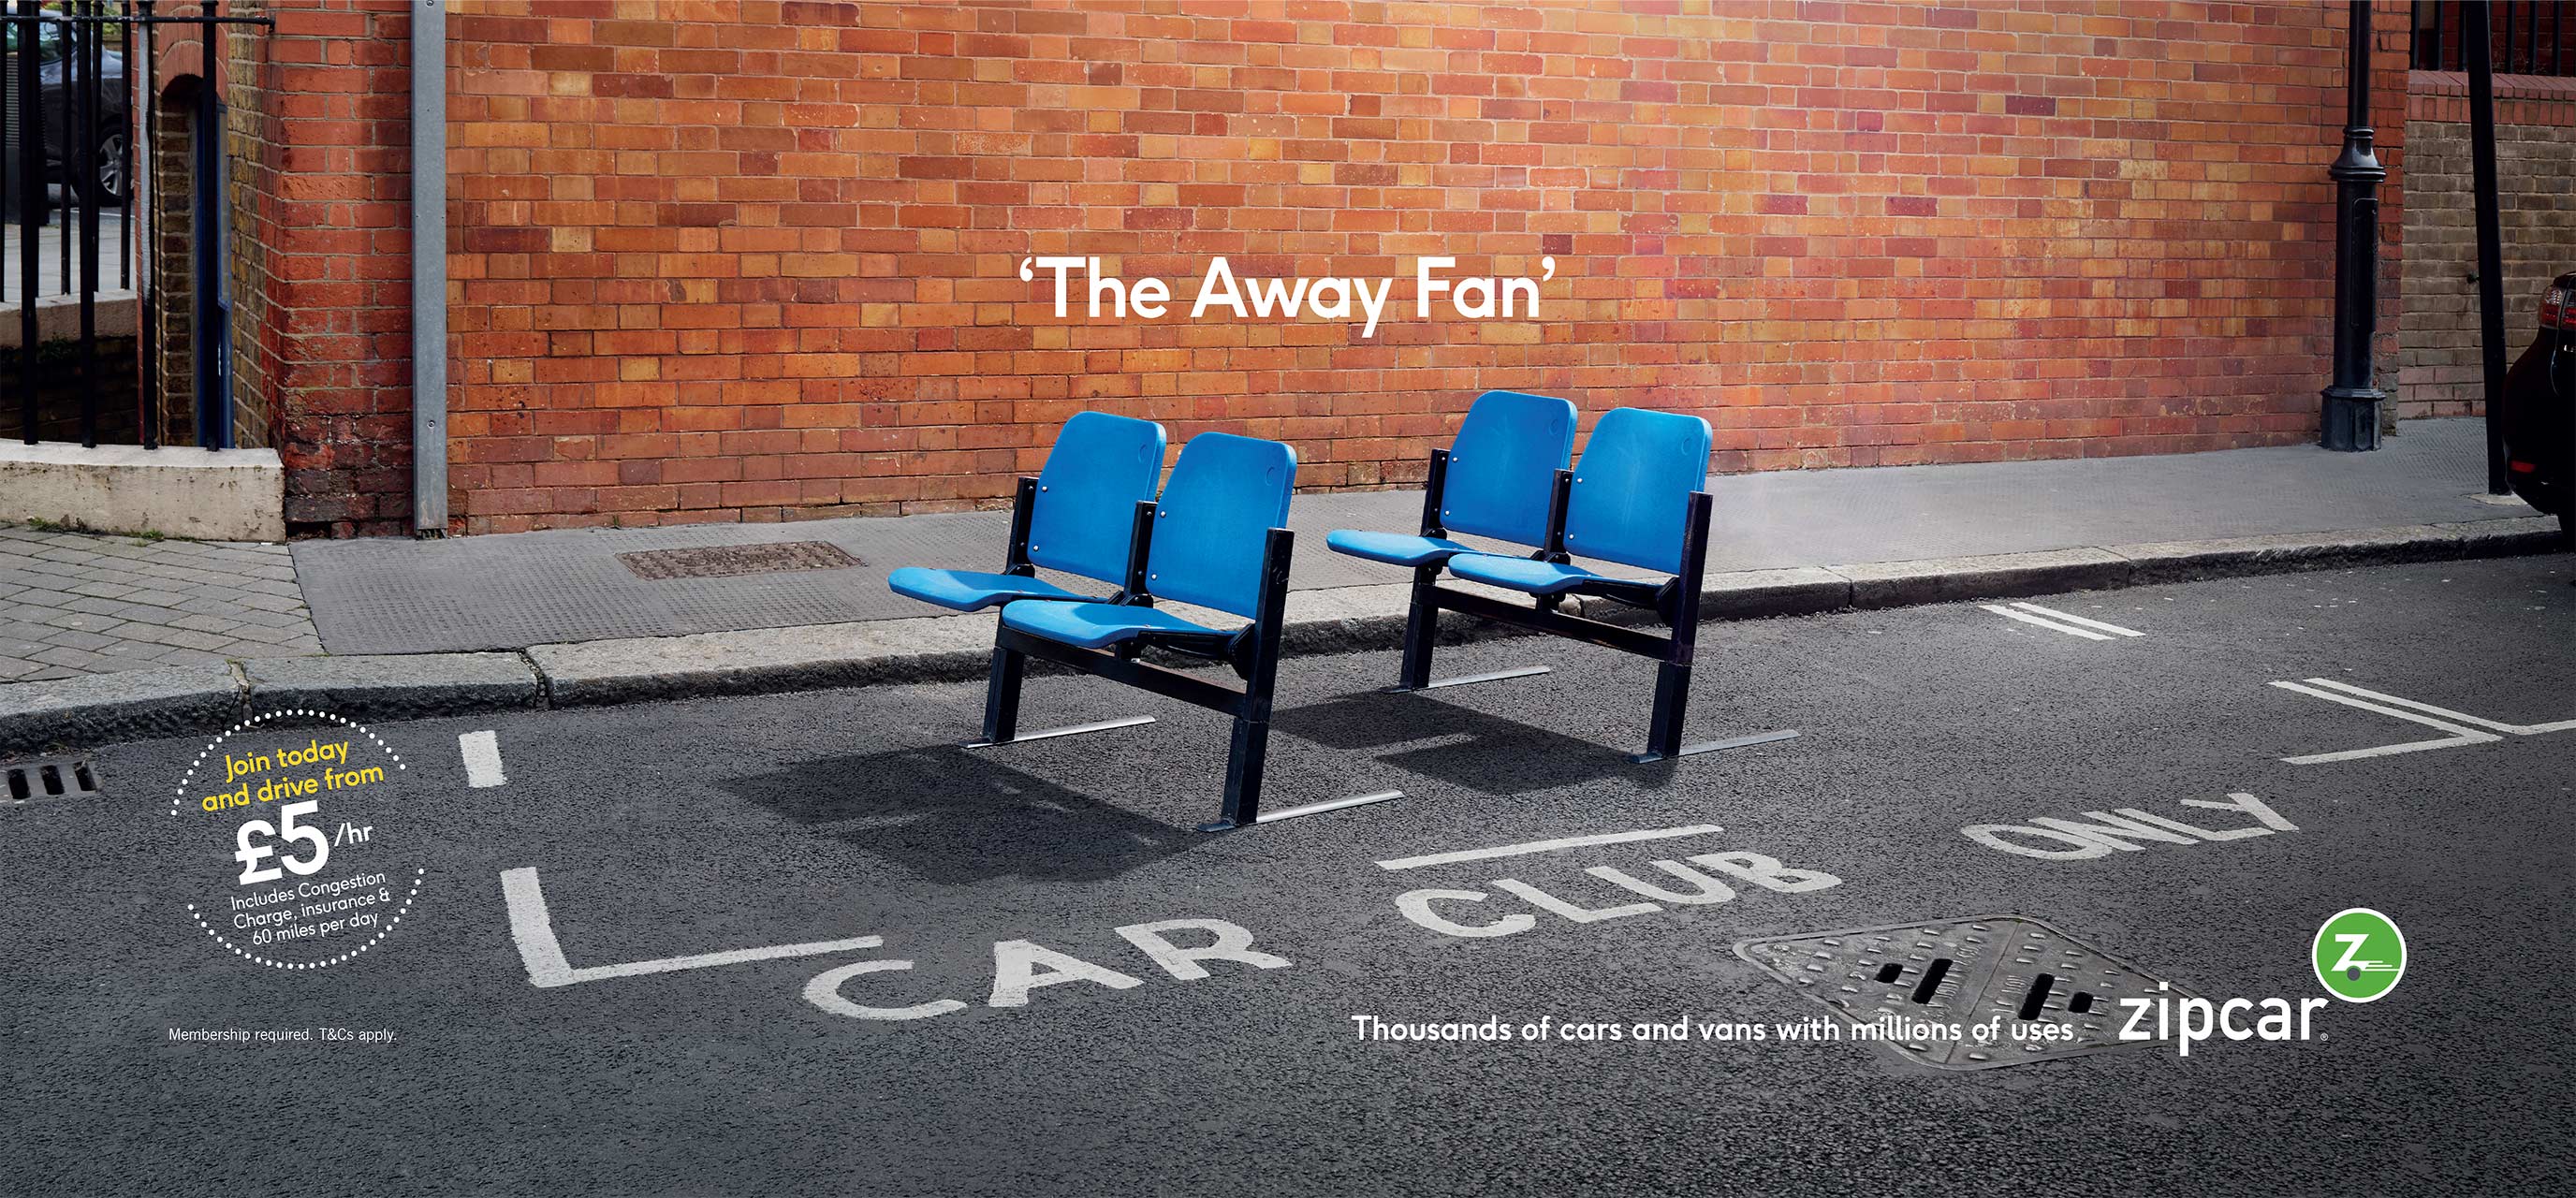 Zipcar_Away-Fan_VUEWEB